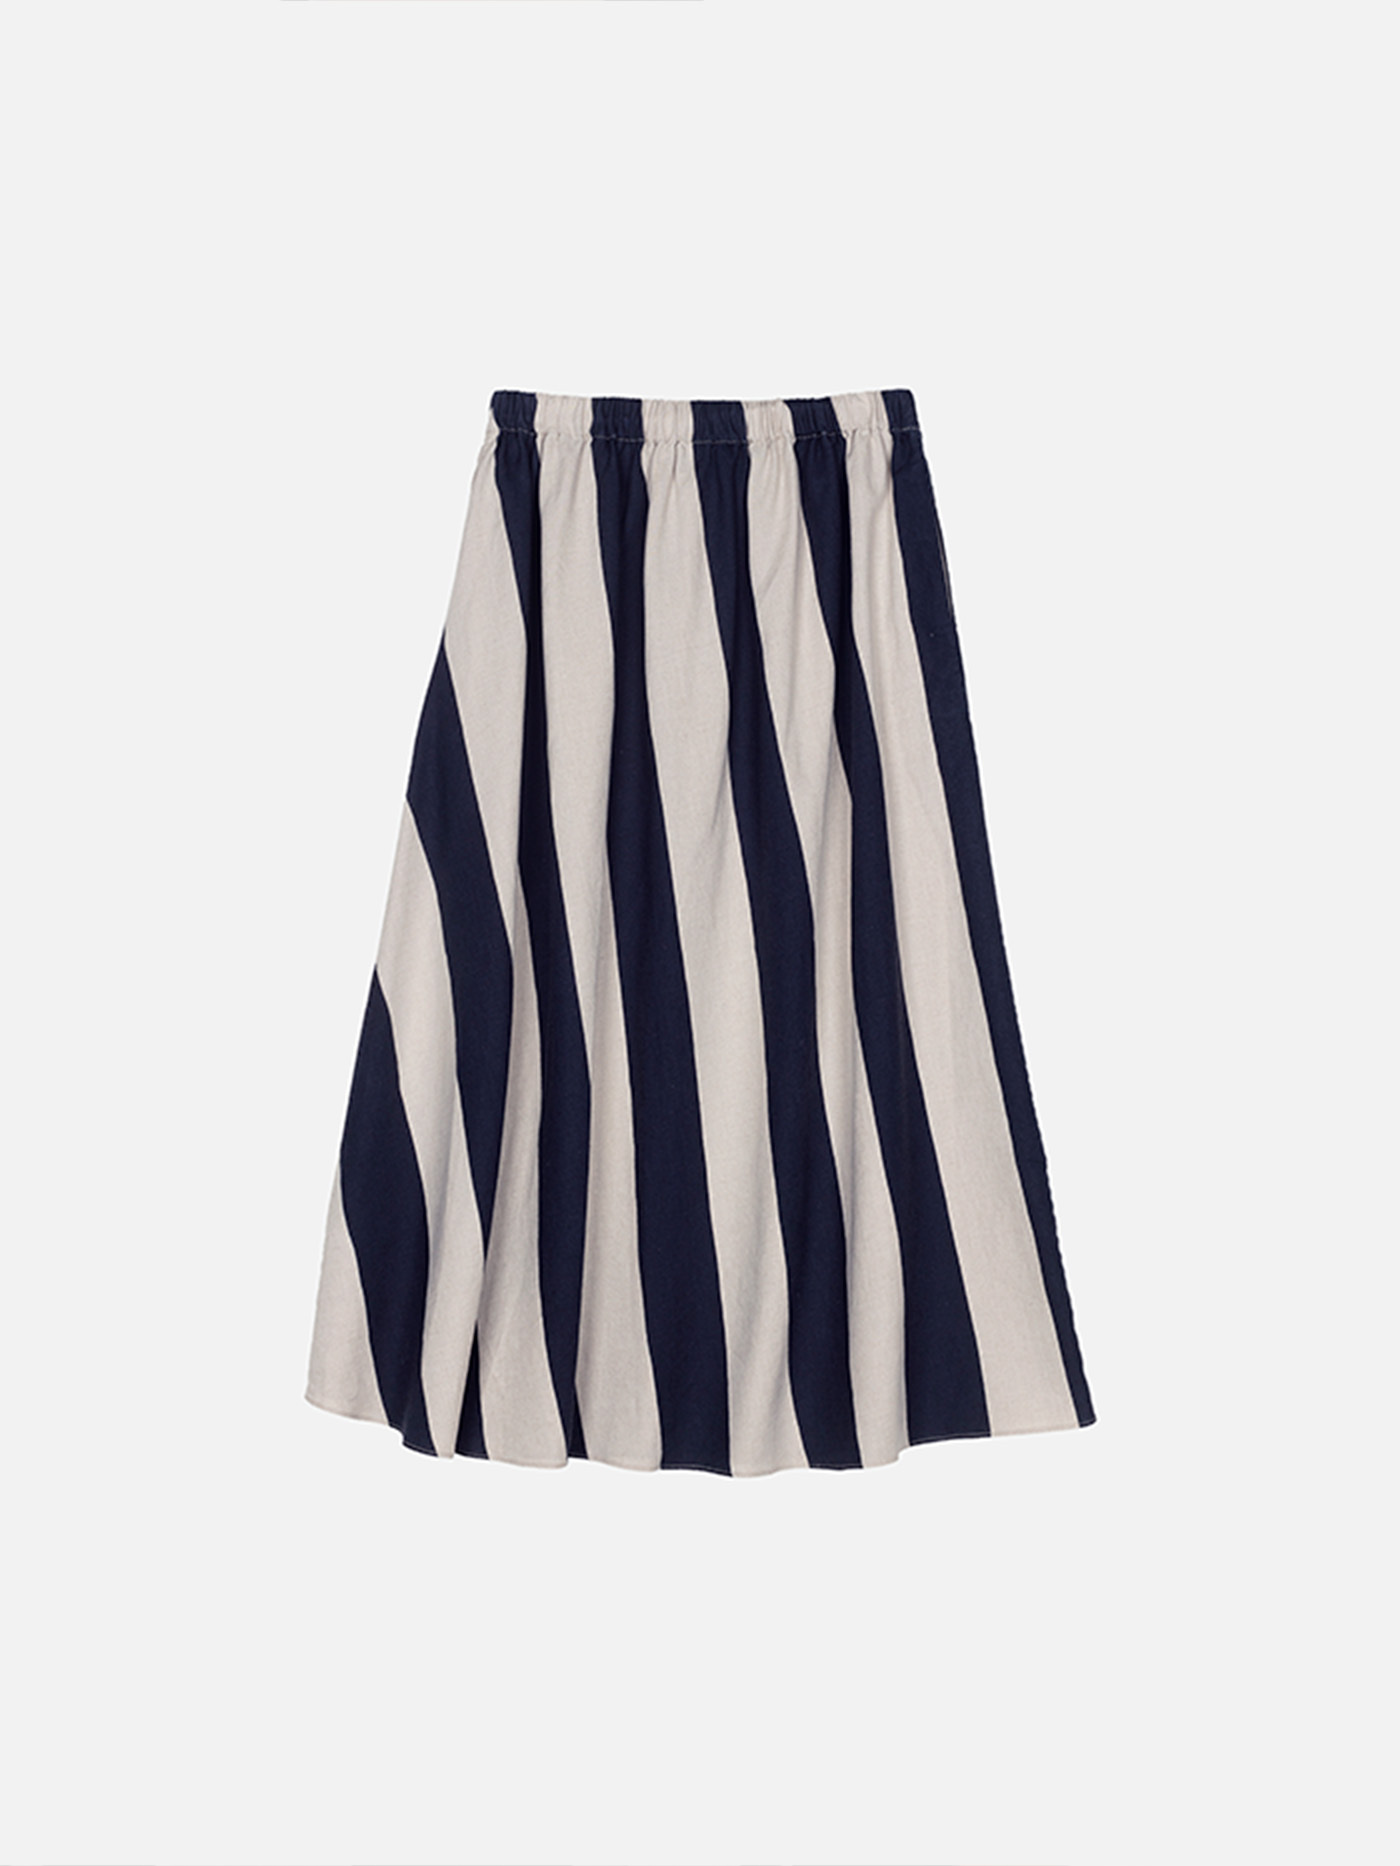 Folka Maalis Linen Skirt